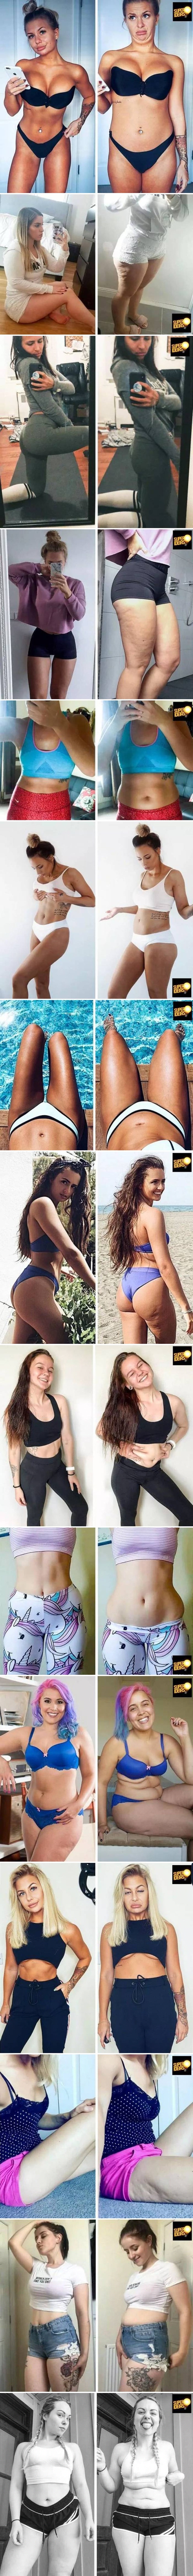 Zgodne djevojke s Instagrama odlučile su razočarati svoje pratitelje pa su pokazale kako zapravo izgledaju